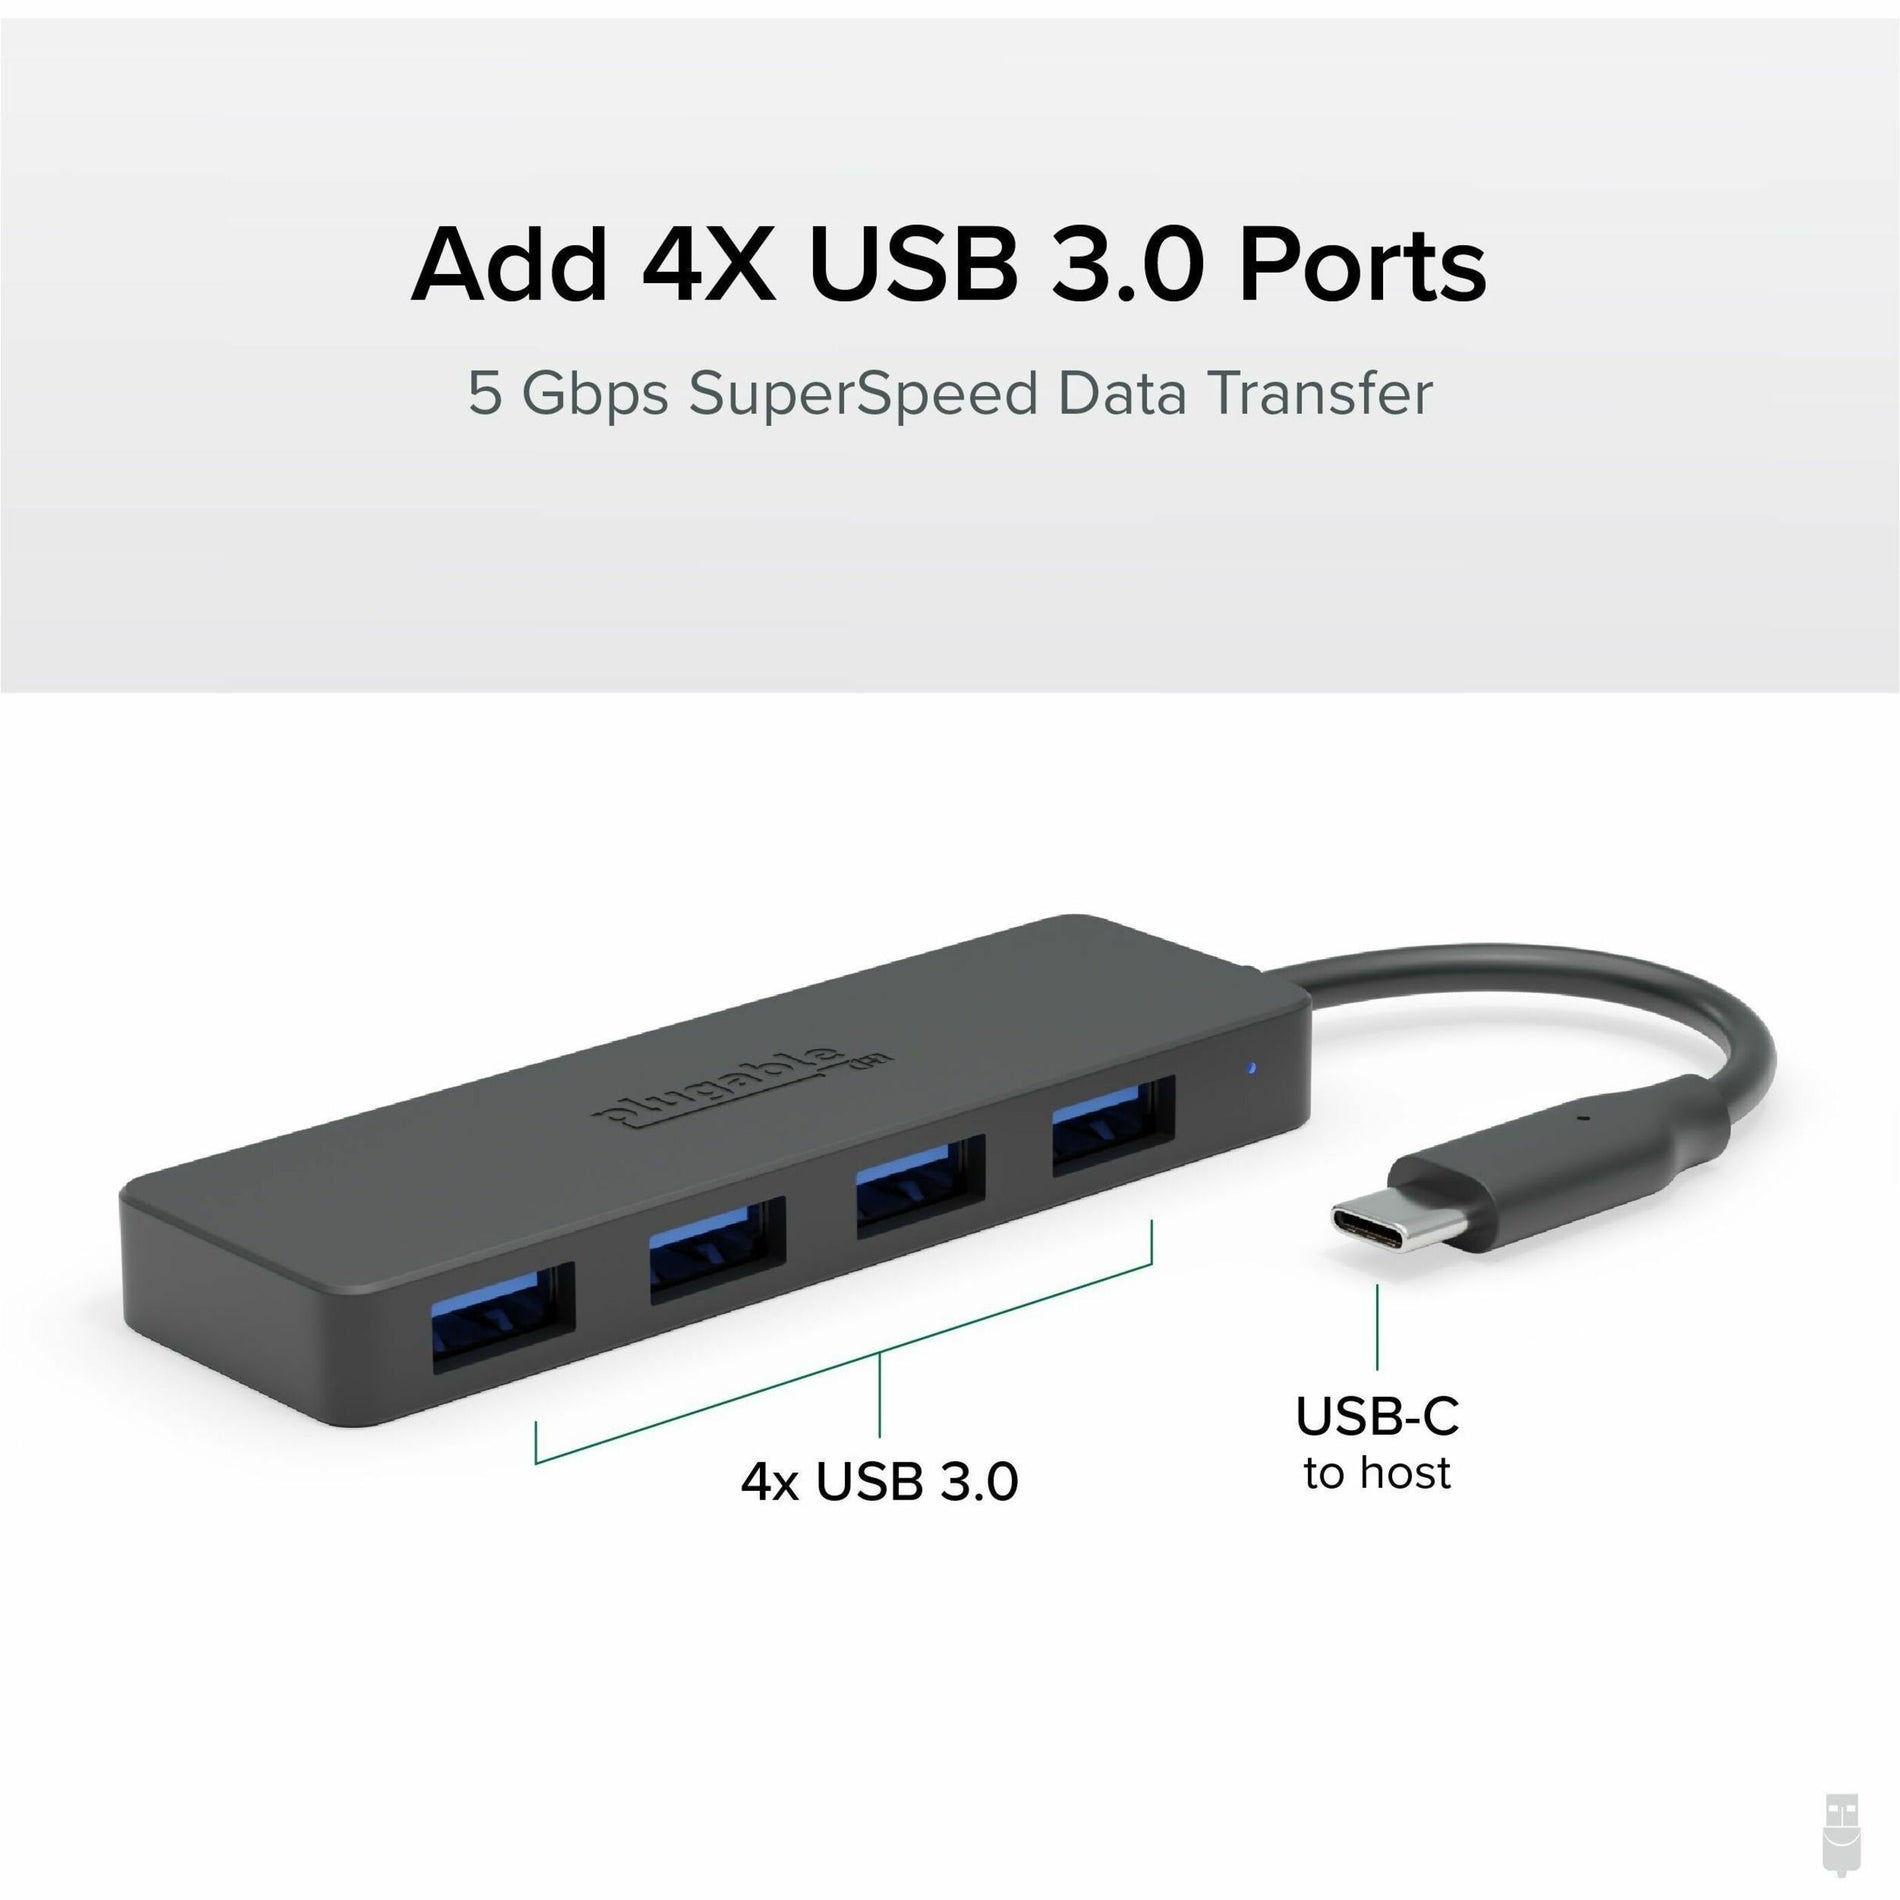 Plugable USBC-HUB4A USB Hub 4 USB 3.0 Ports Black